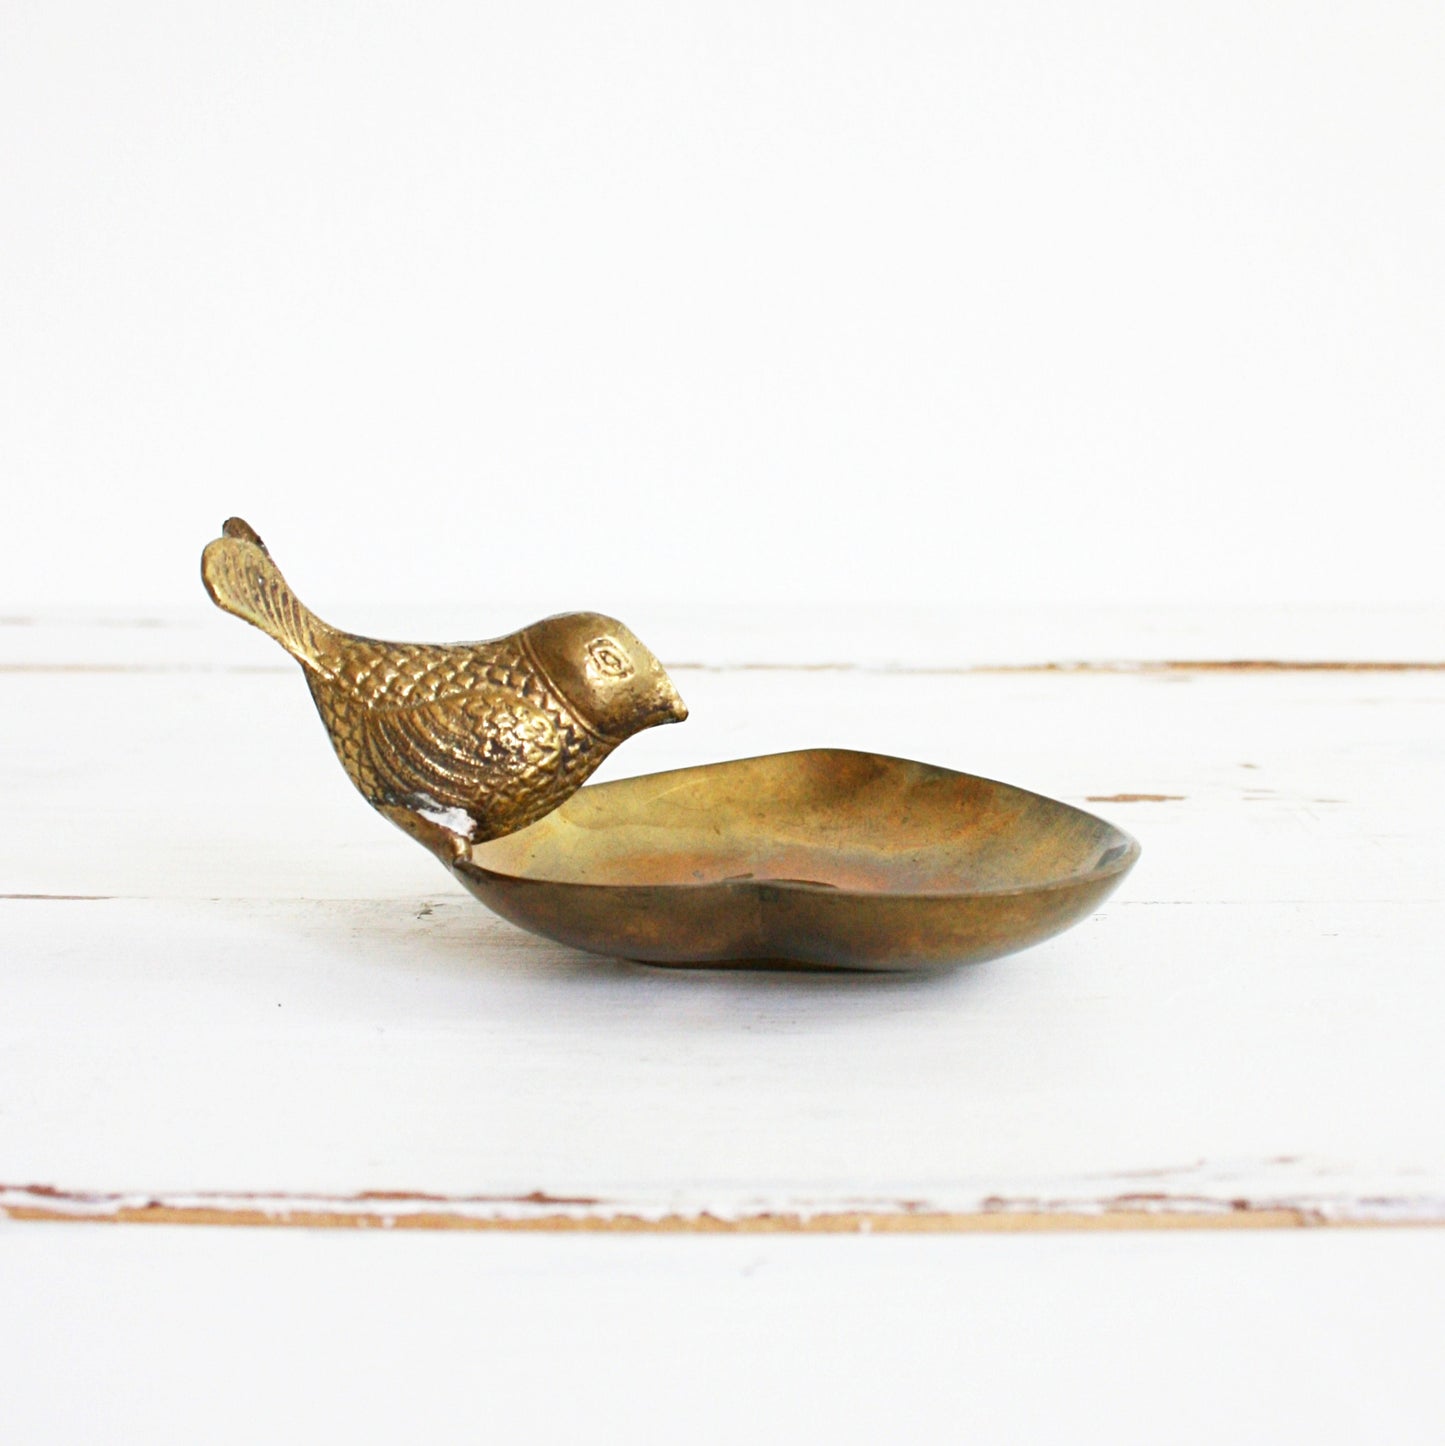 SOLD - Vintage Golden Brass Bird and Heart Trinket Dish / Mid Century Brass Dish